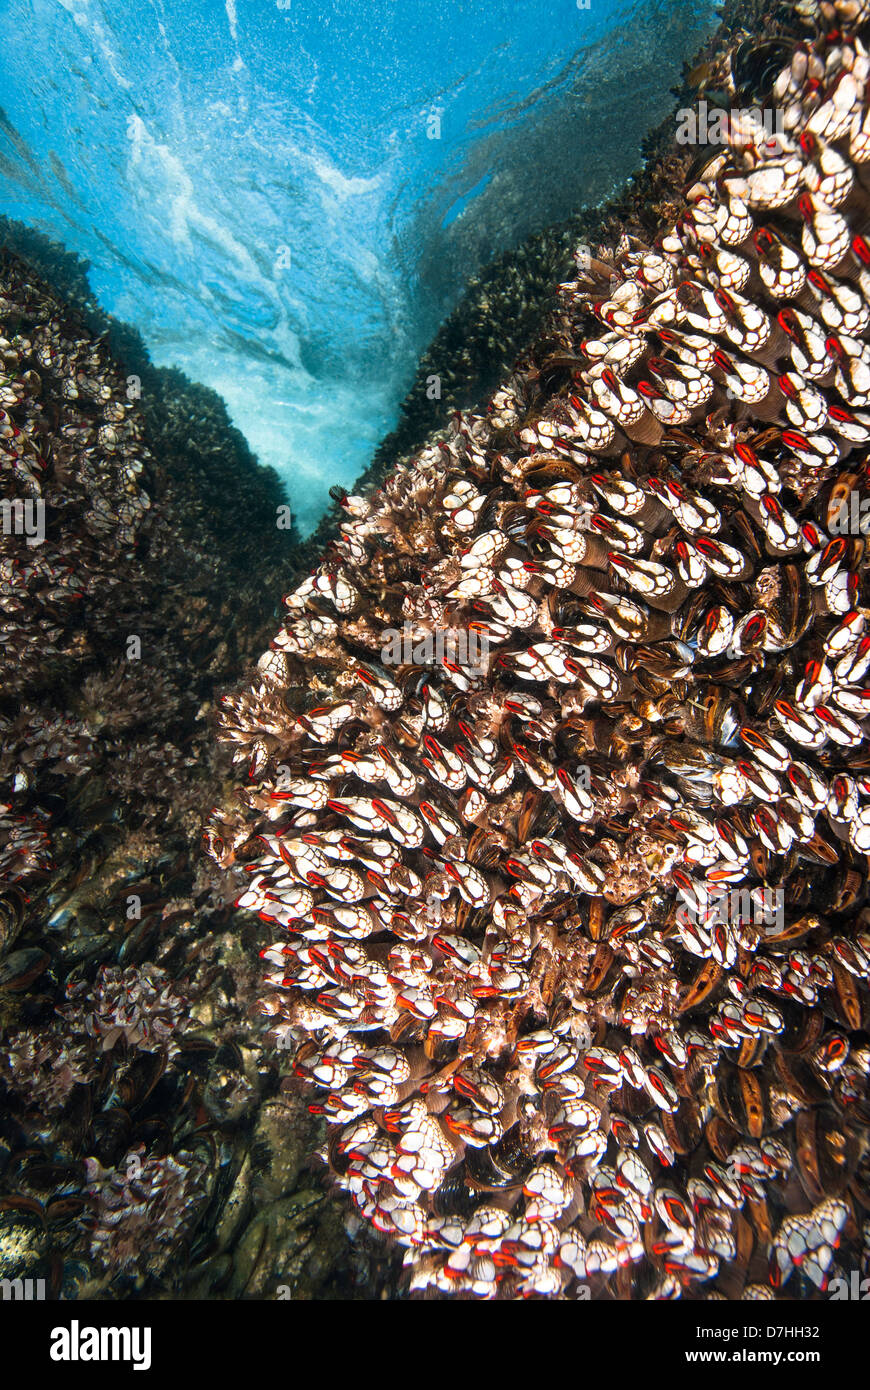 Una escena subacuática de sharp percebes cuello de cisne sobre un arrecife en aguas poco profundas. Foto de stock